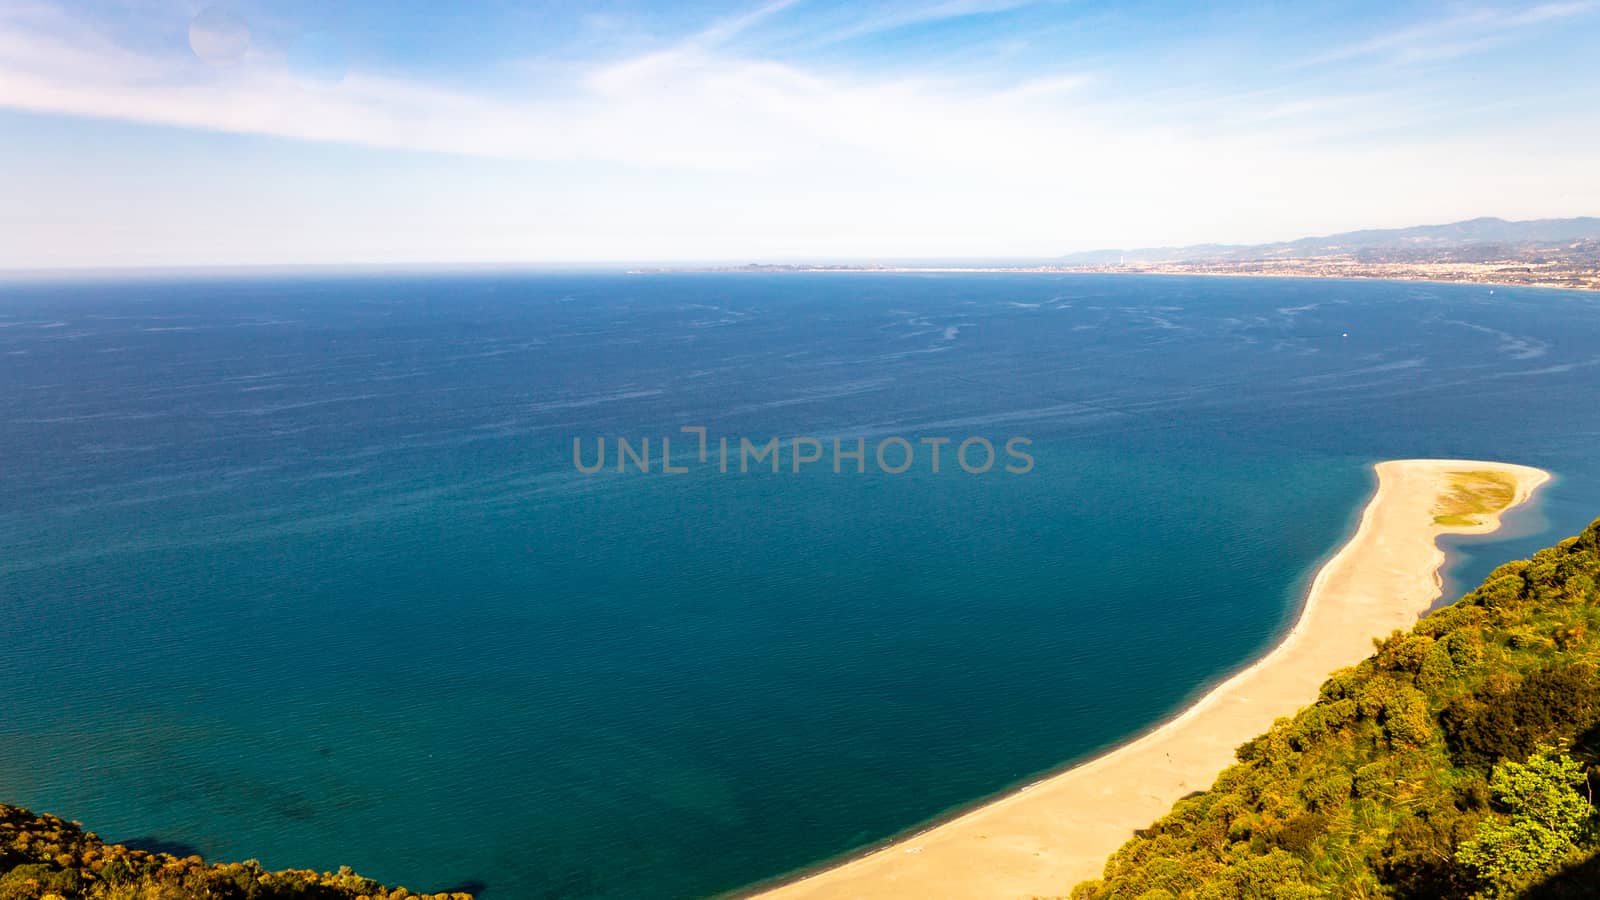 The beach at Capo Tindari, Sicily by alanstix64